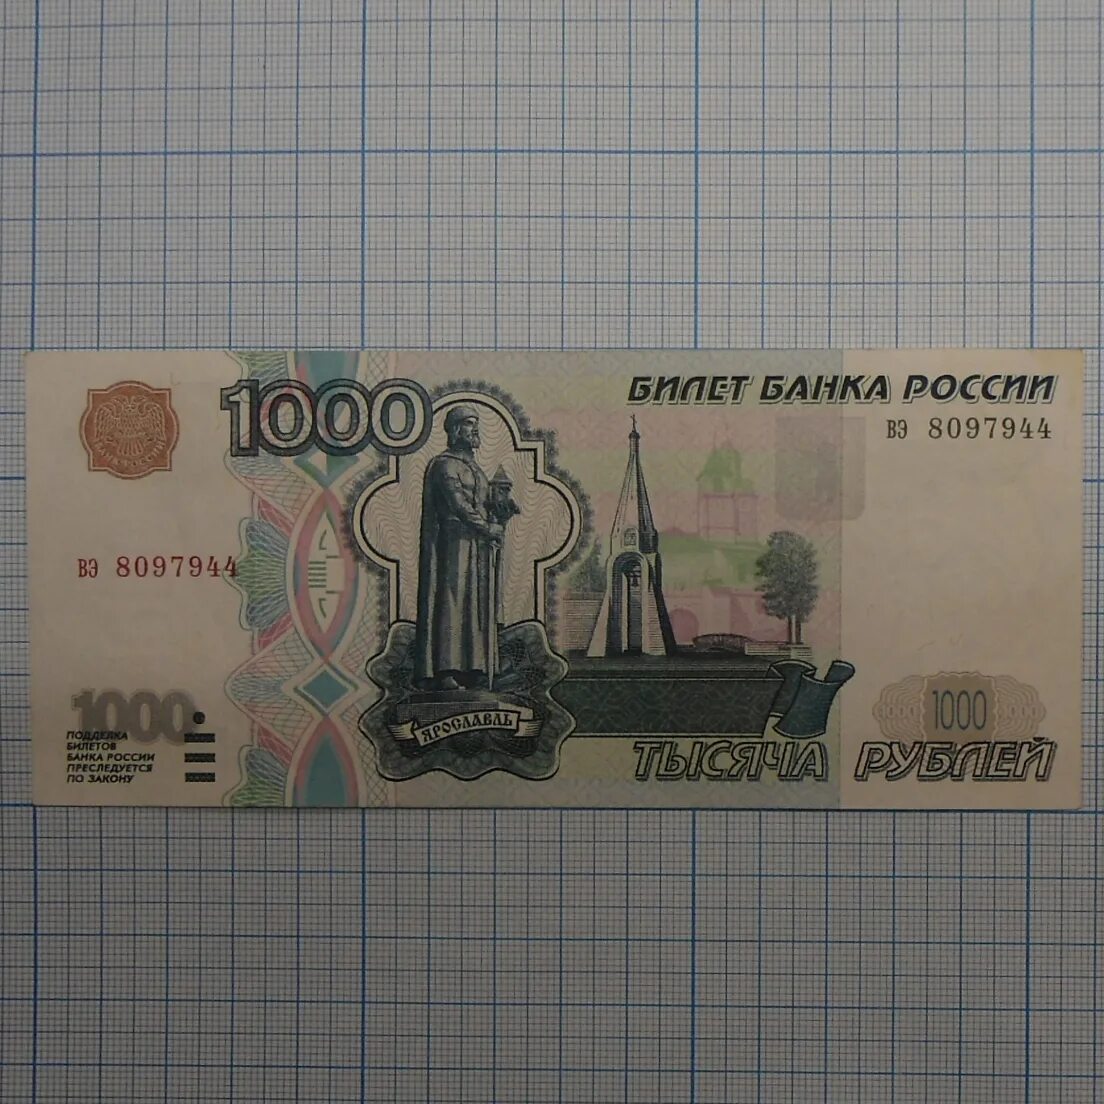 1000 рублей уфа. 1000 Рублей 1997 (модификация 2004 года) UNC. 1000 Рублей 1997 модификация 2004. Купюра 1000 рублей 1997 модификация. 1000 Рублей 2004 года модификации.